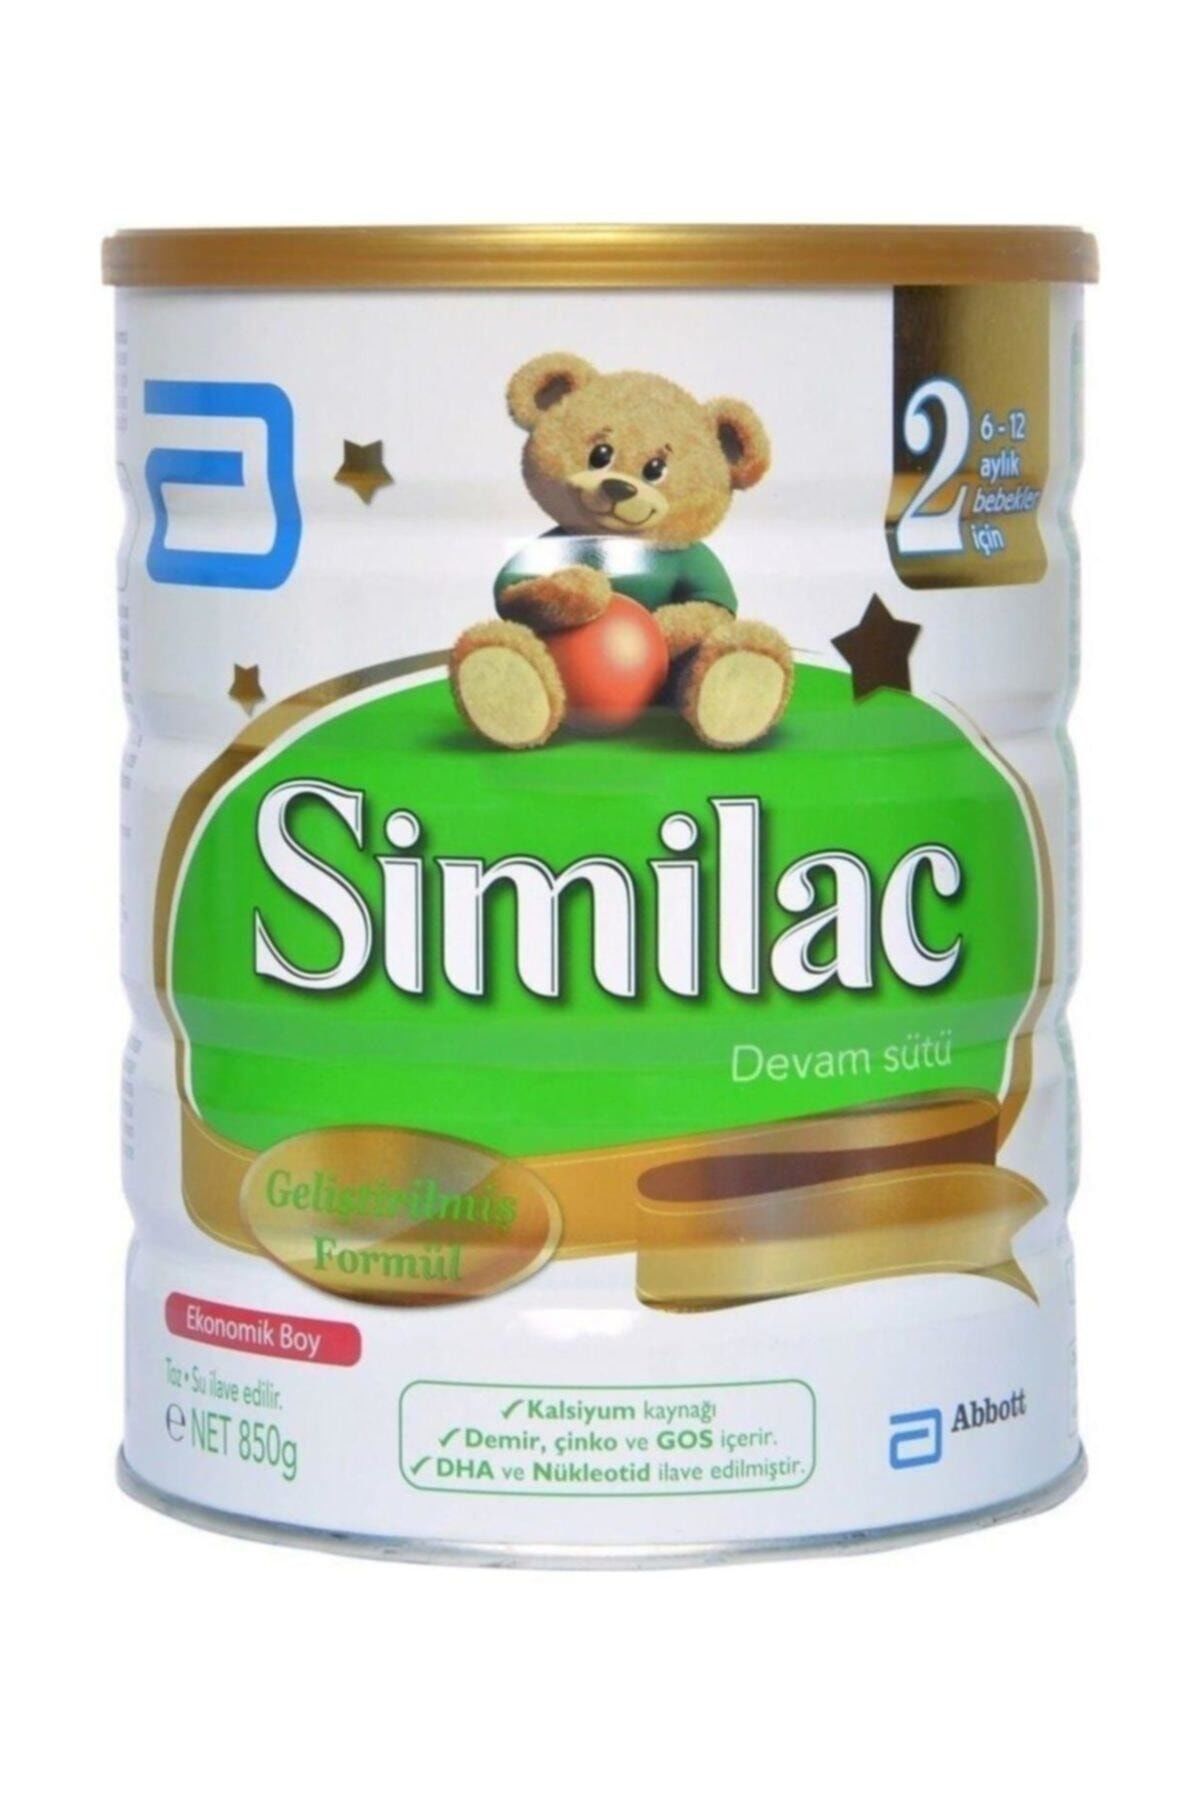 Similac 2 Devam Sütü 850 gr